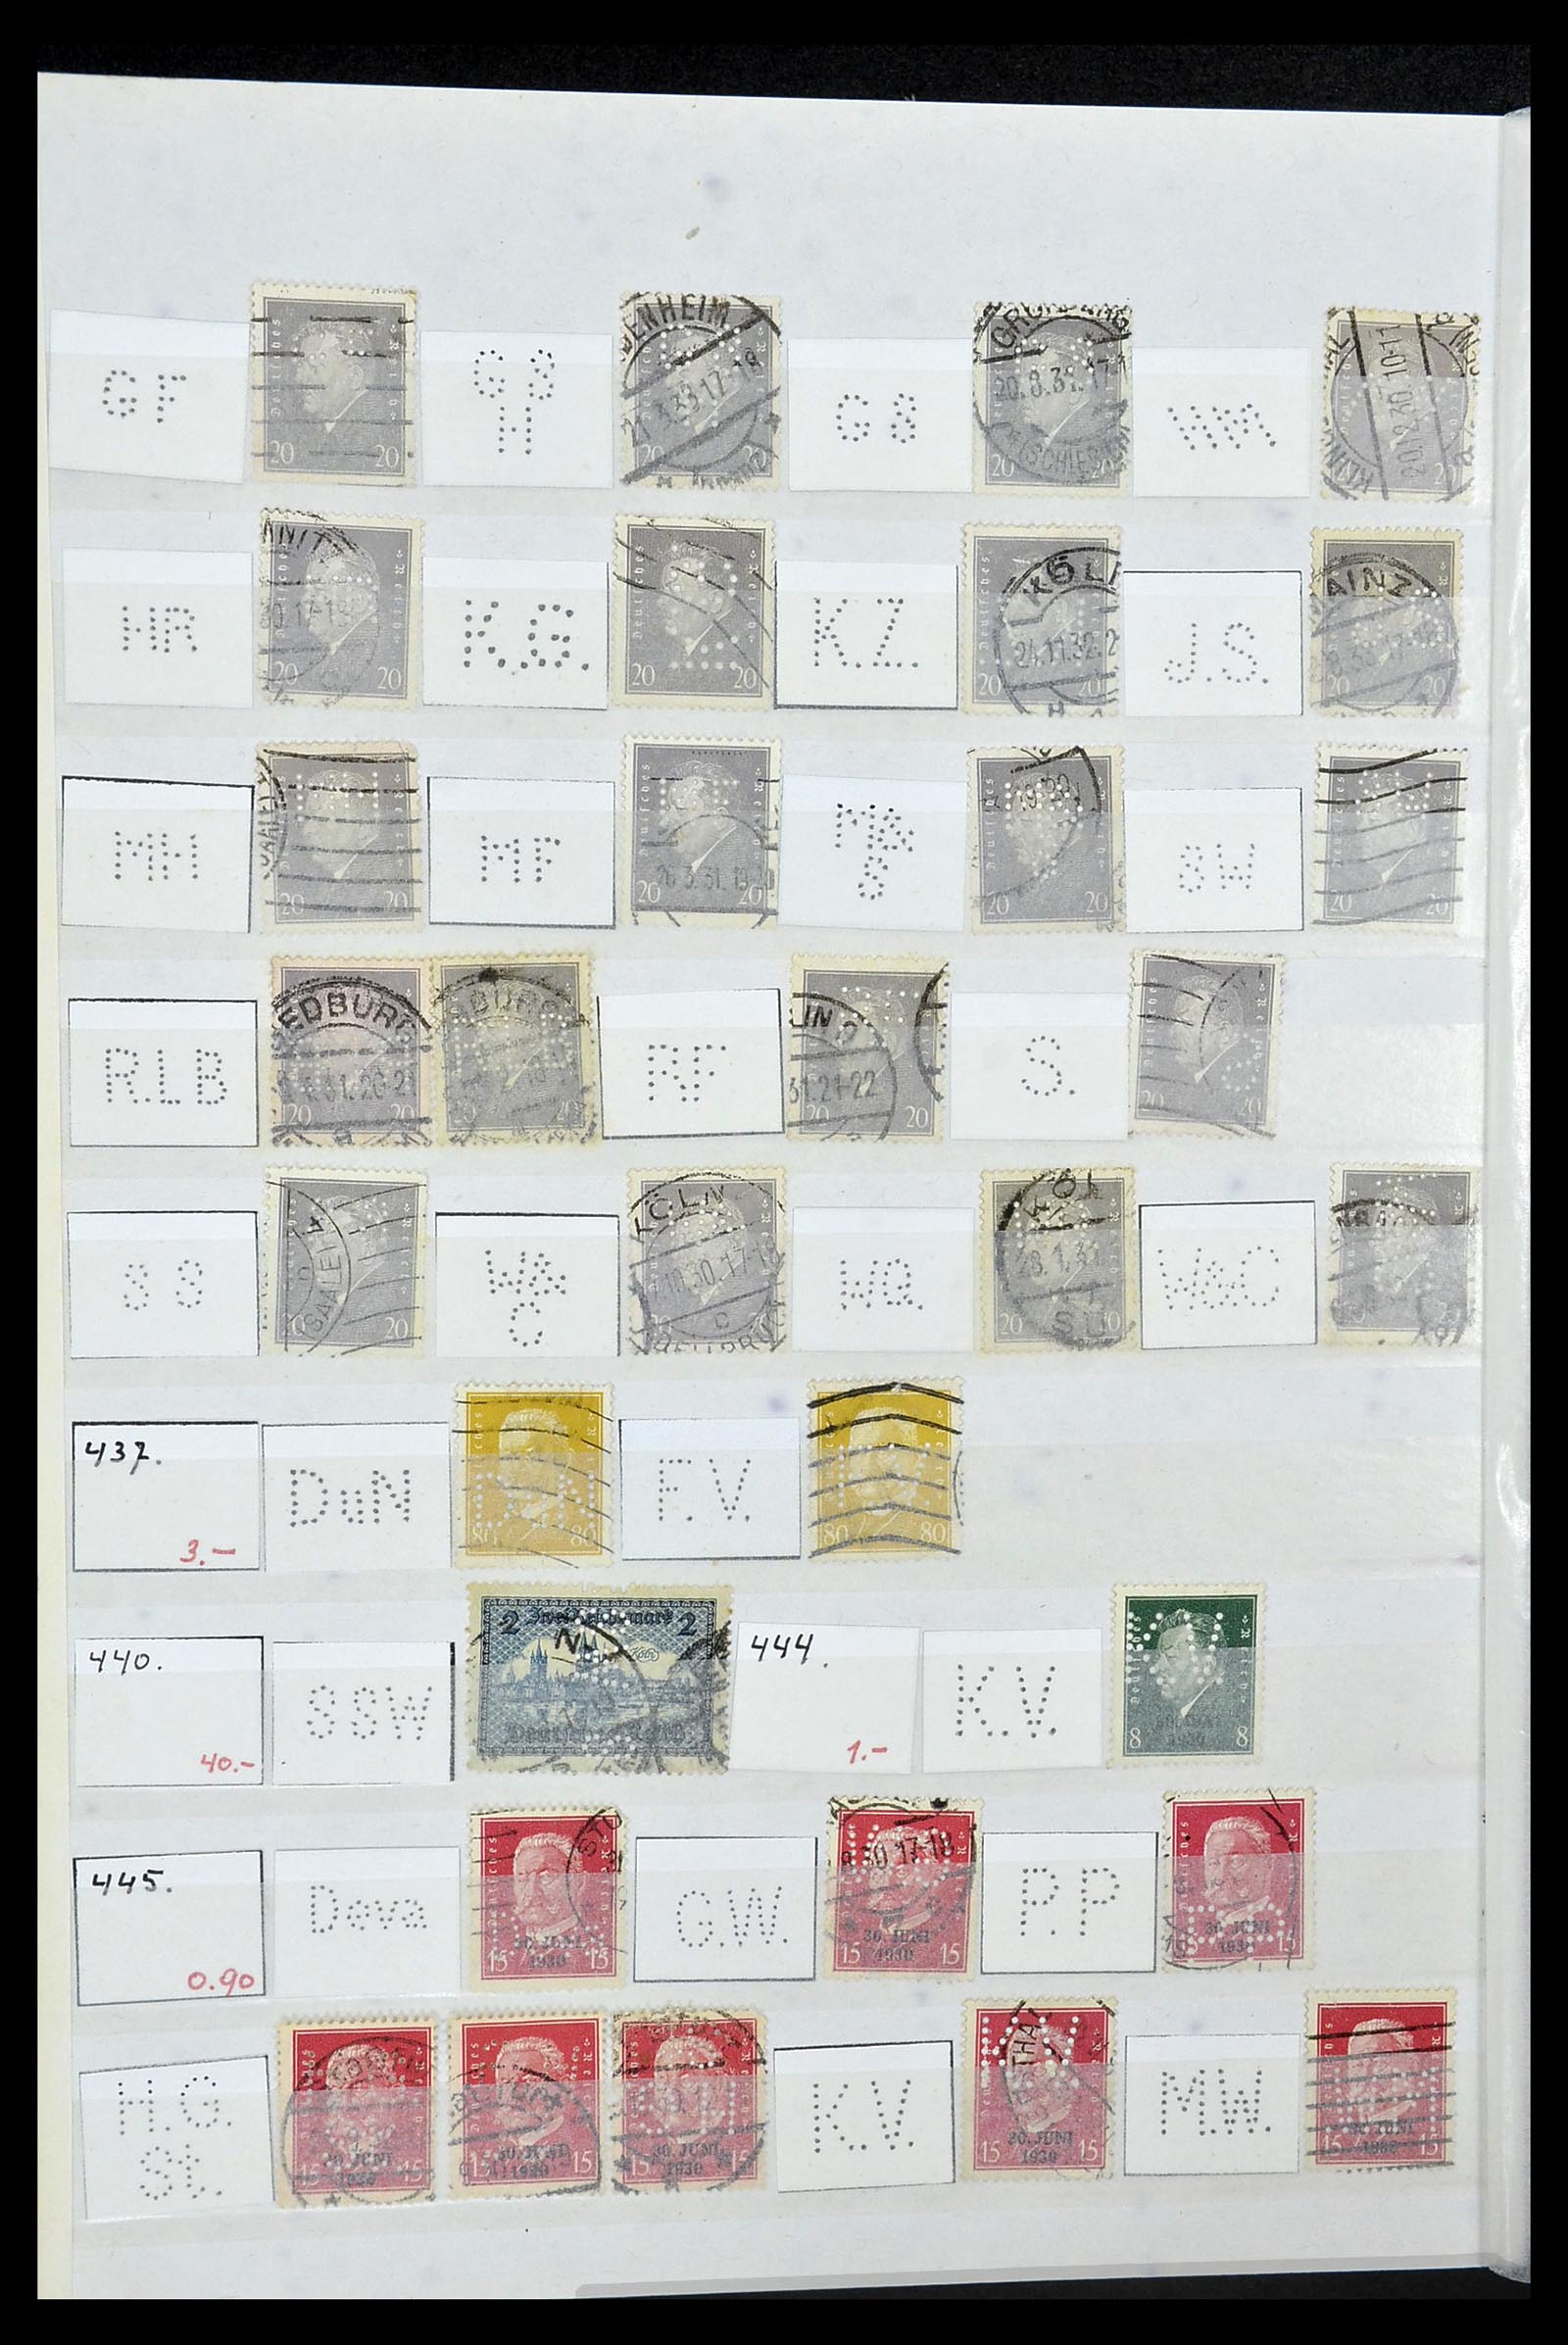 34071 044 - Stamp collection 34071 German Reich perfins 1923-1930.